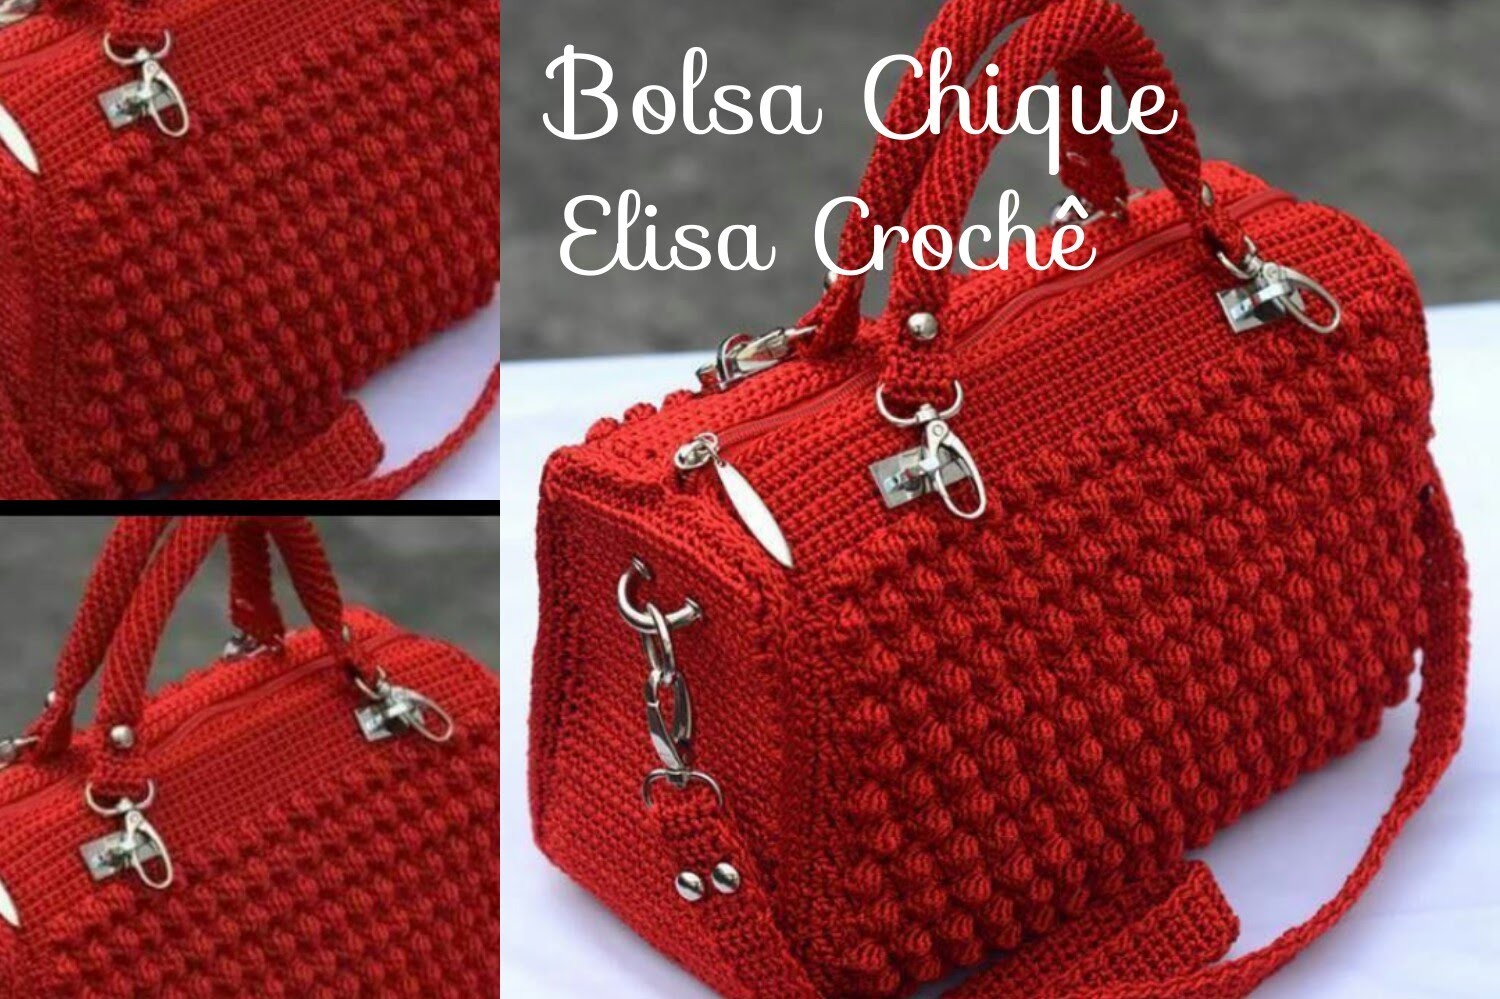 Versão destros : Bolsa chique em crochê ( 2ª parte ) # Elisa Crochê